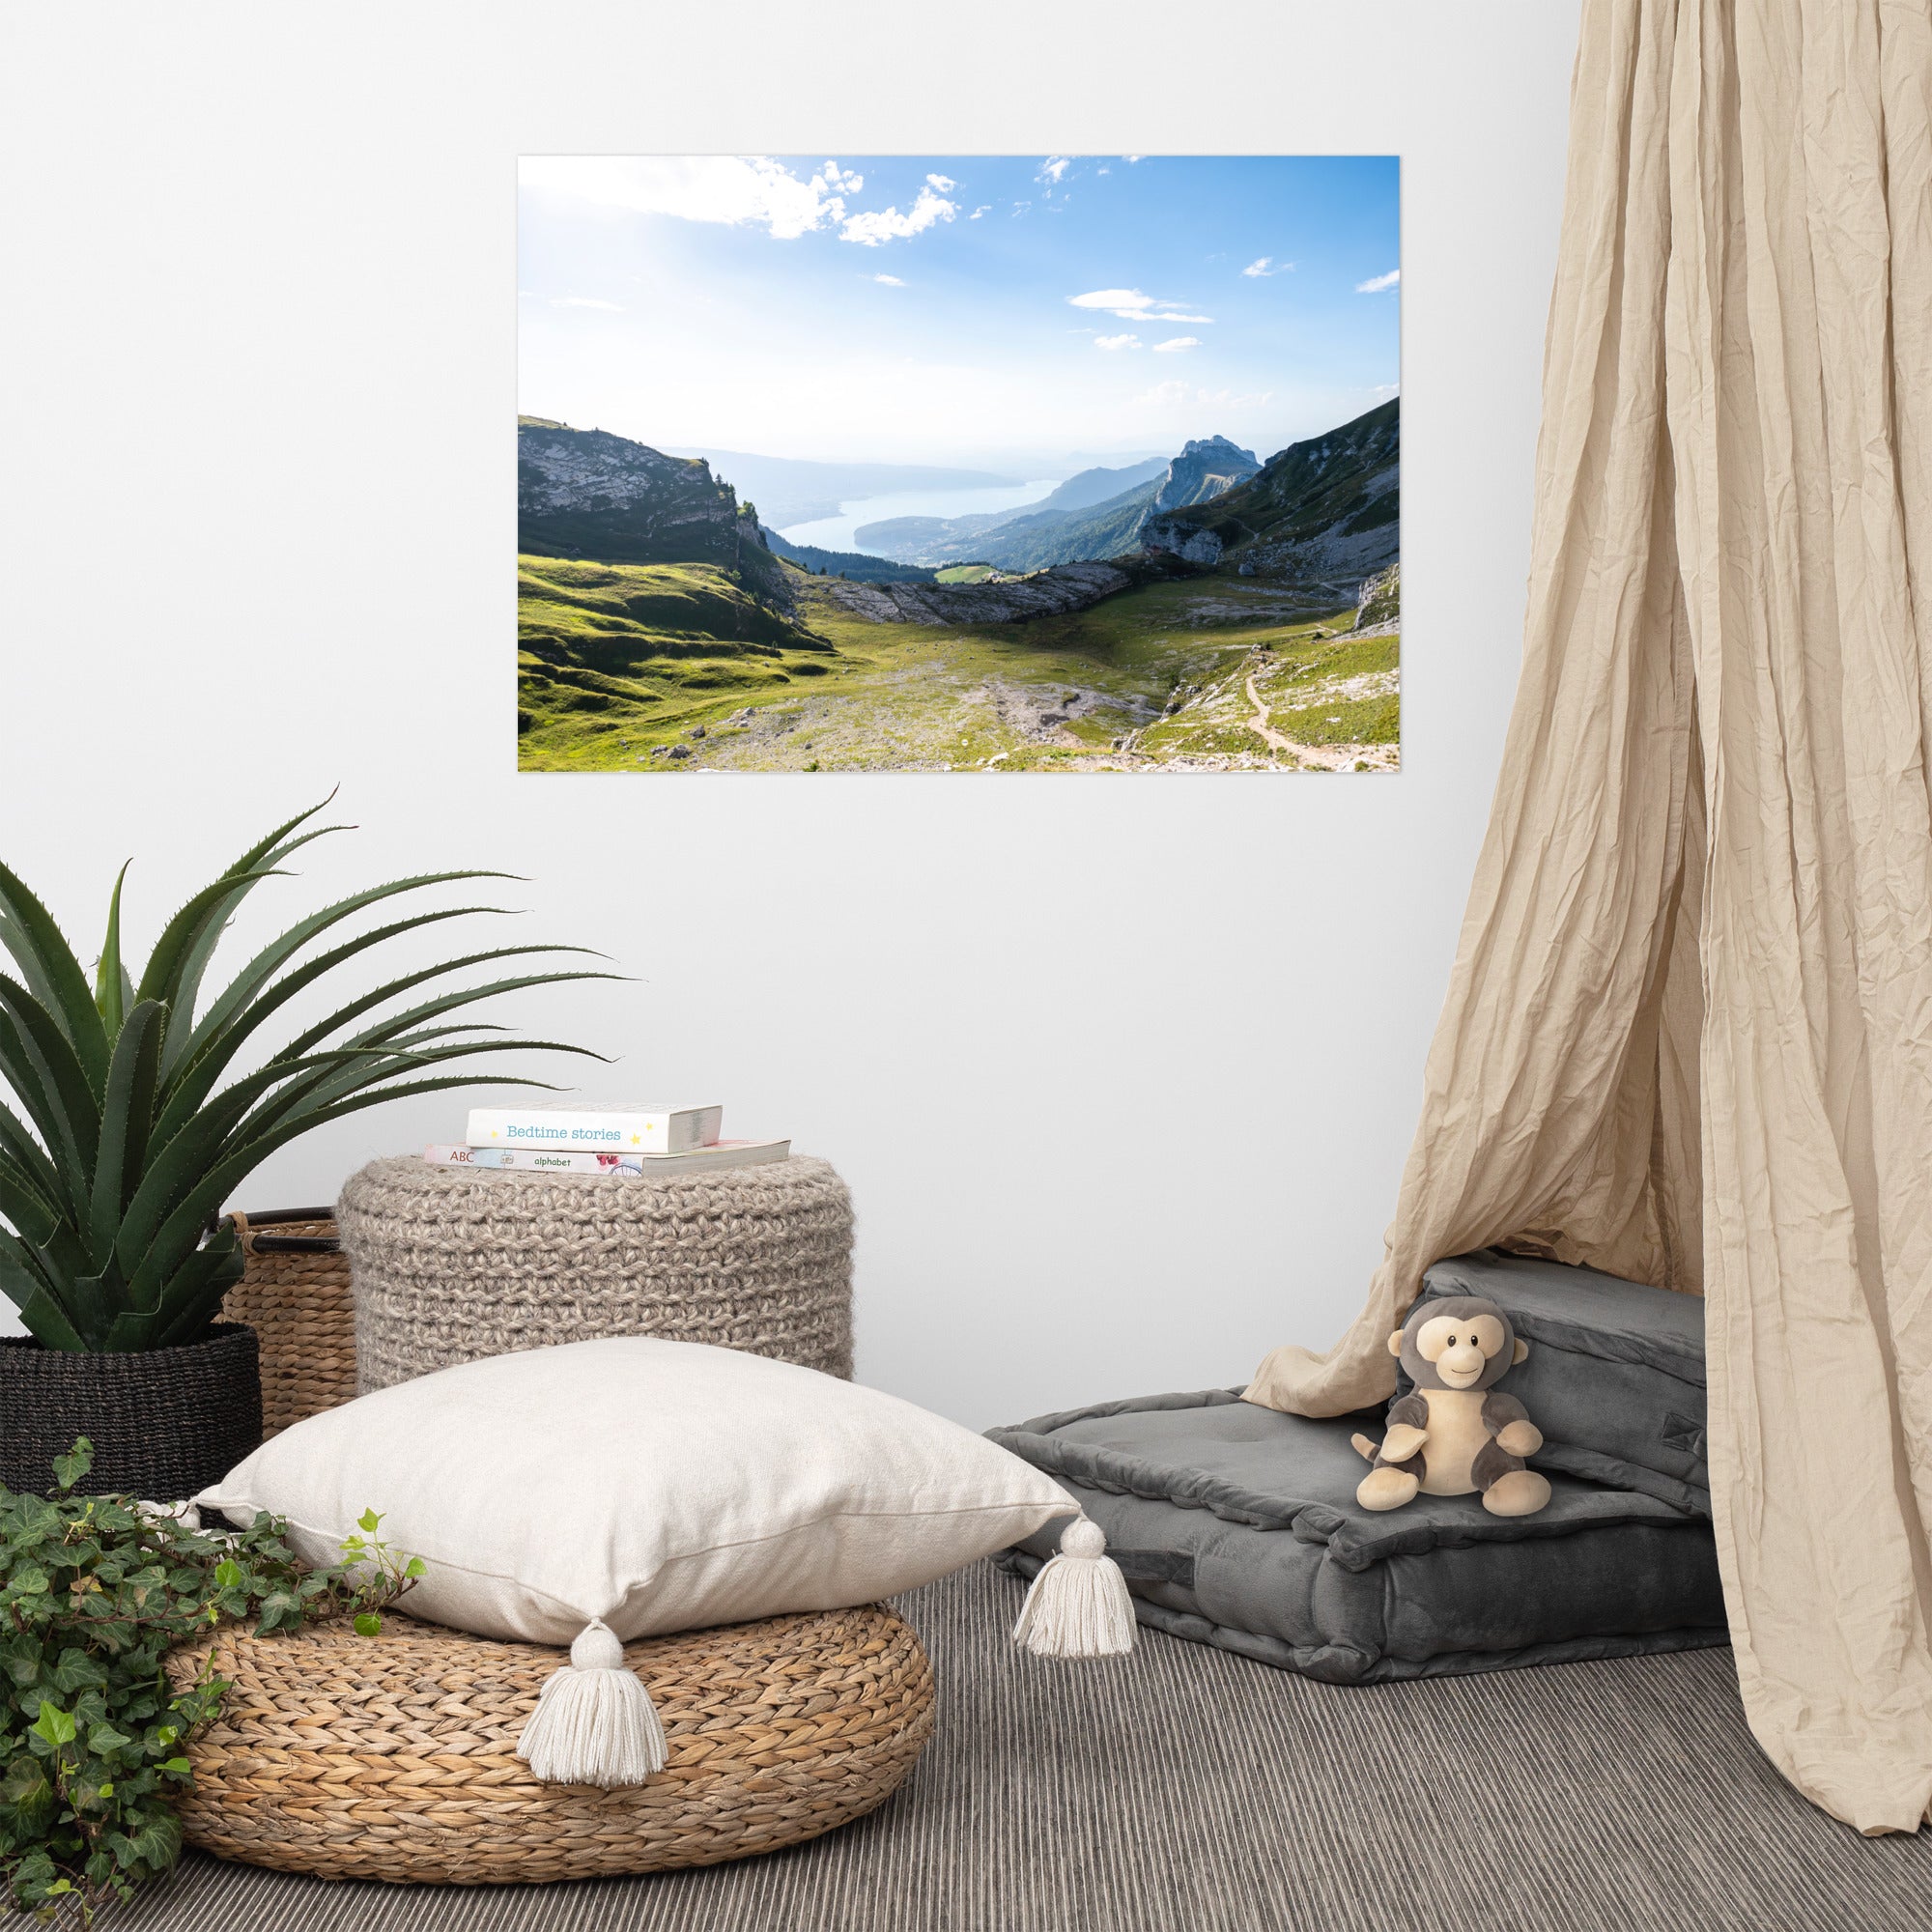 Poster 'Panorama' représentant une vue panoramique du lac d'Annecy en Haute-Savoie, capturant la tranquillité et la beauté naturelle du lieu.